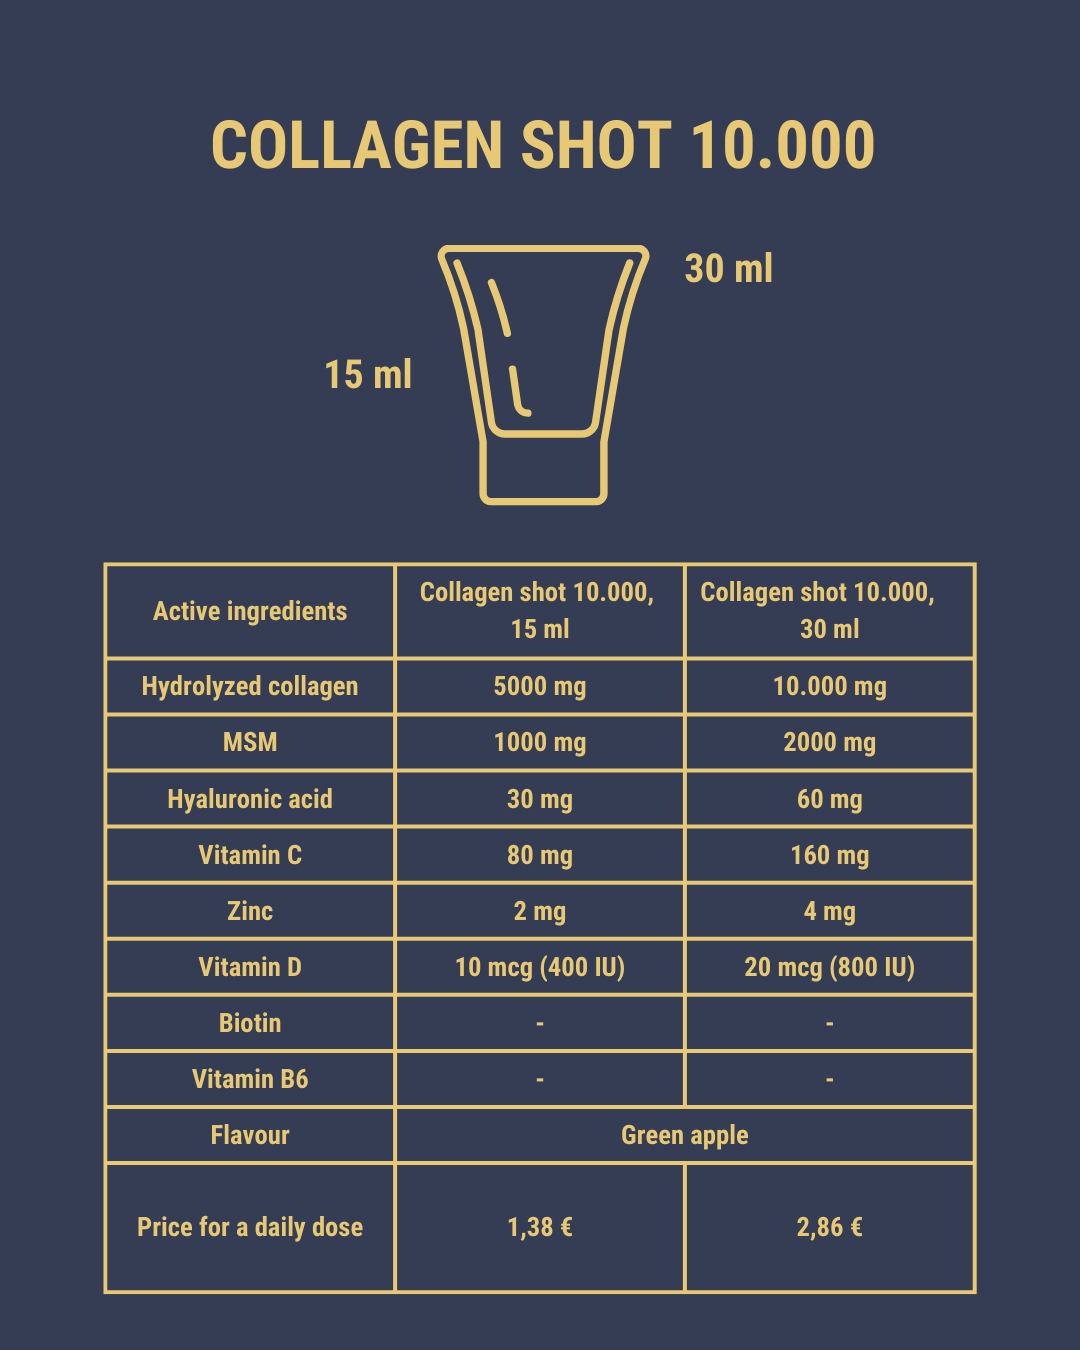 Collagen shot 10.000